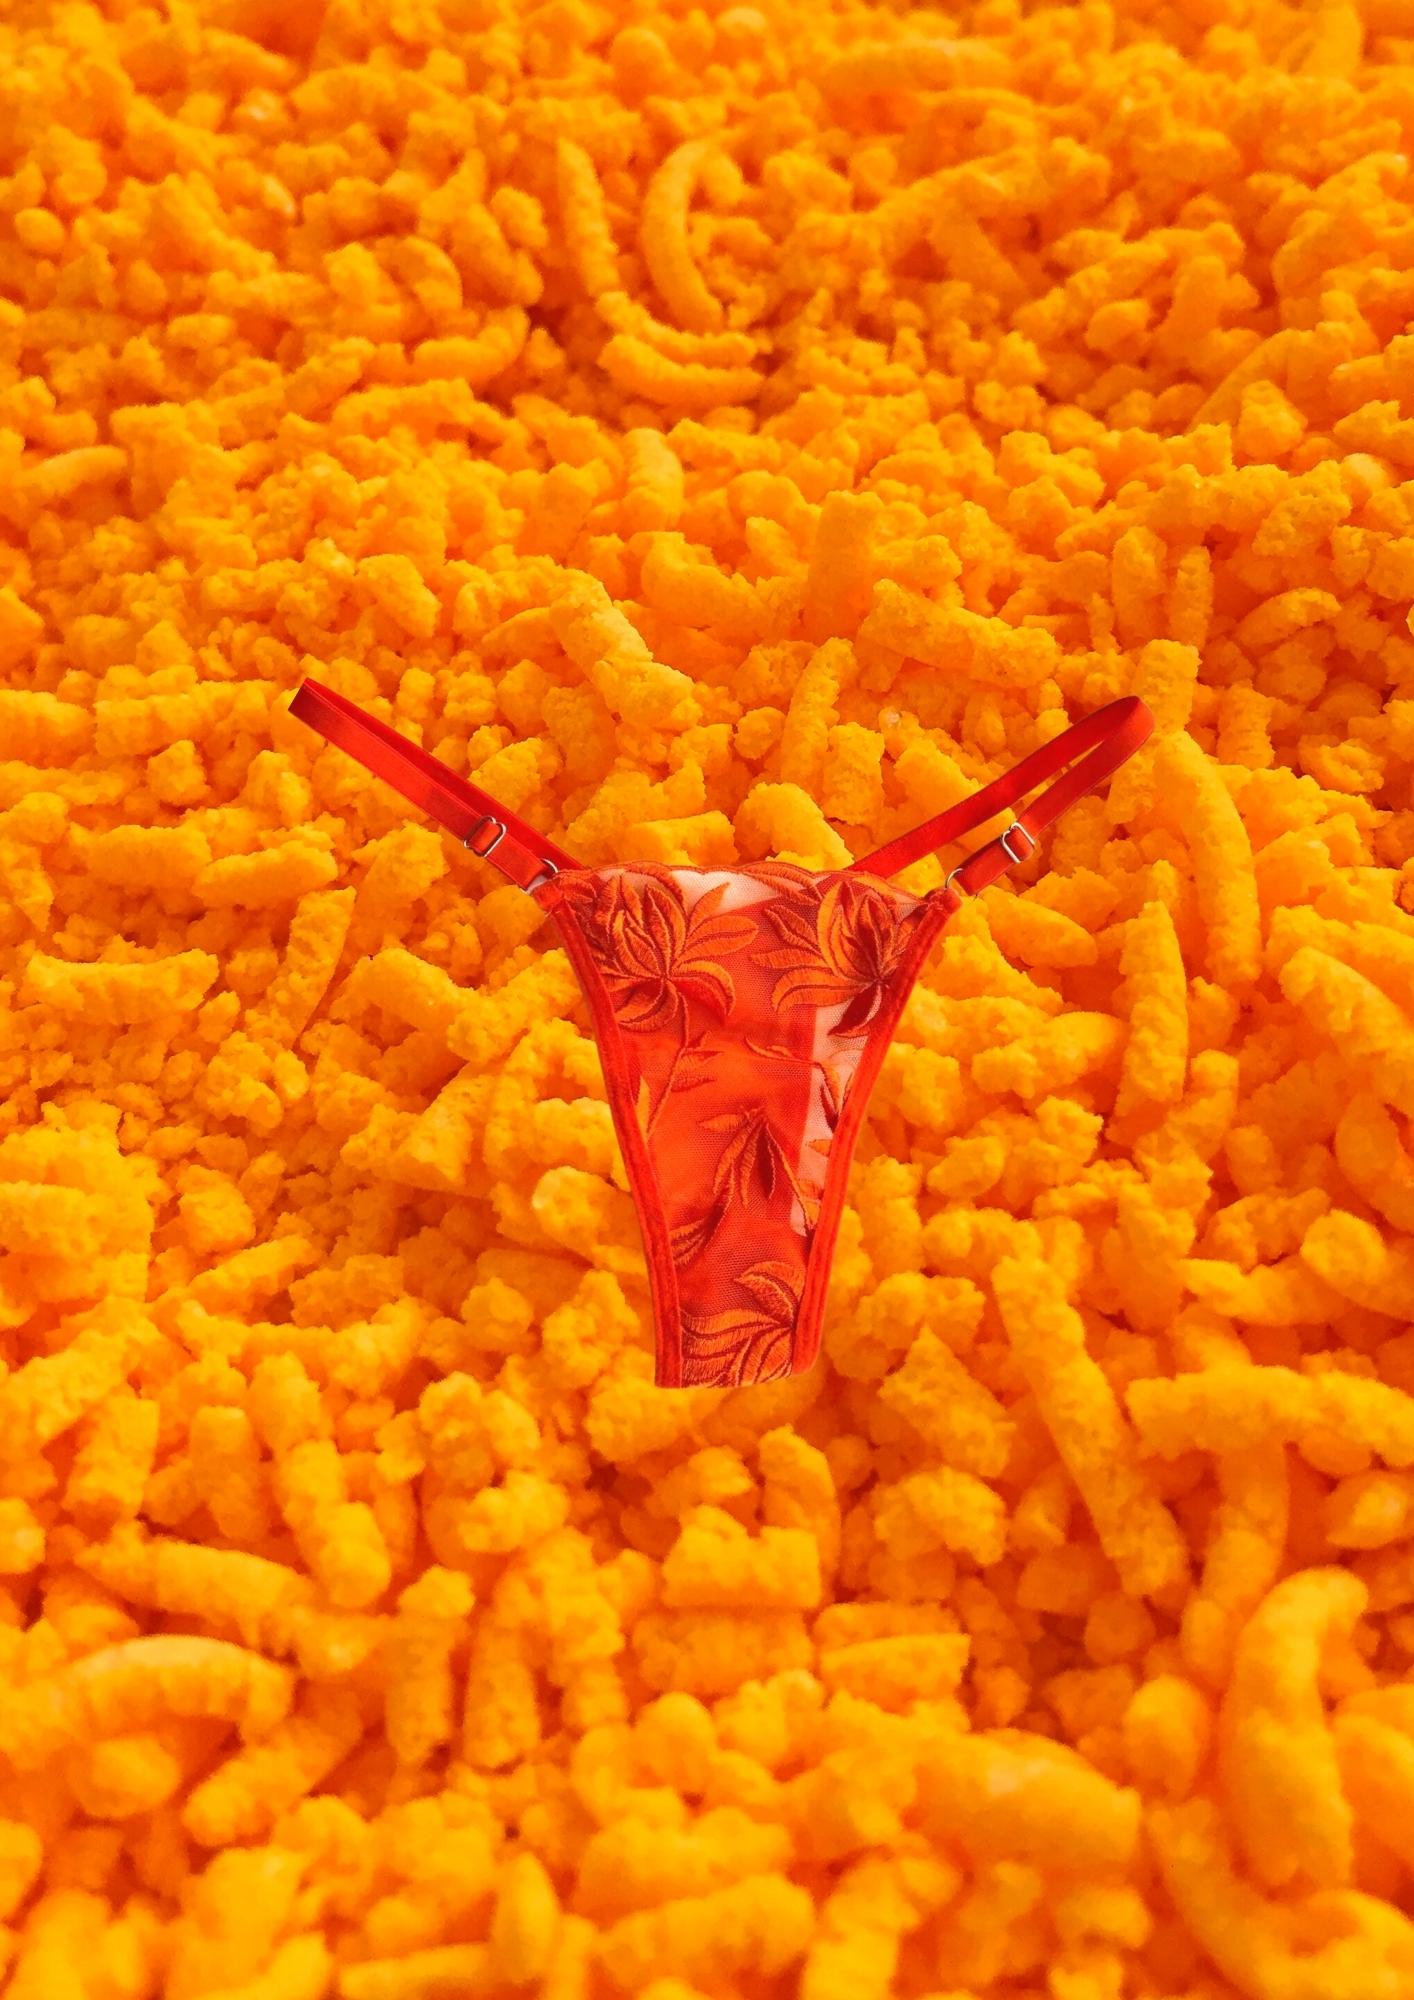 Flaming Cheetos Lingerie Set, Women's Underwear